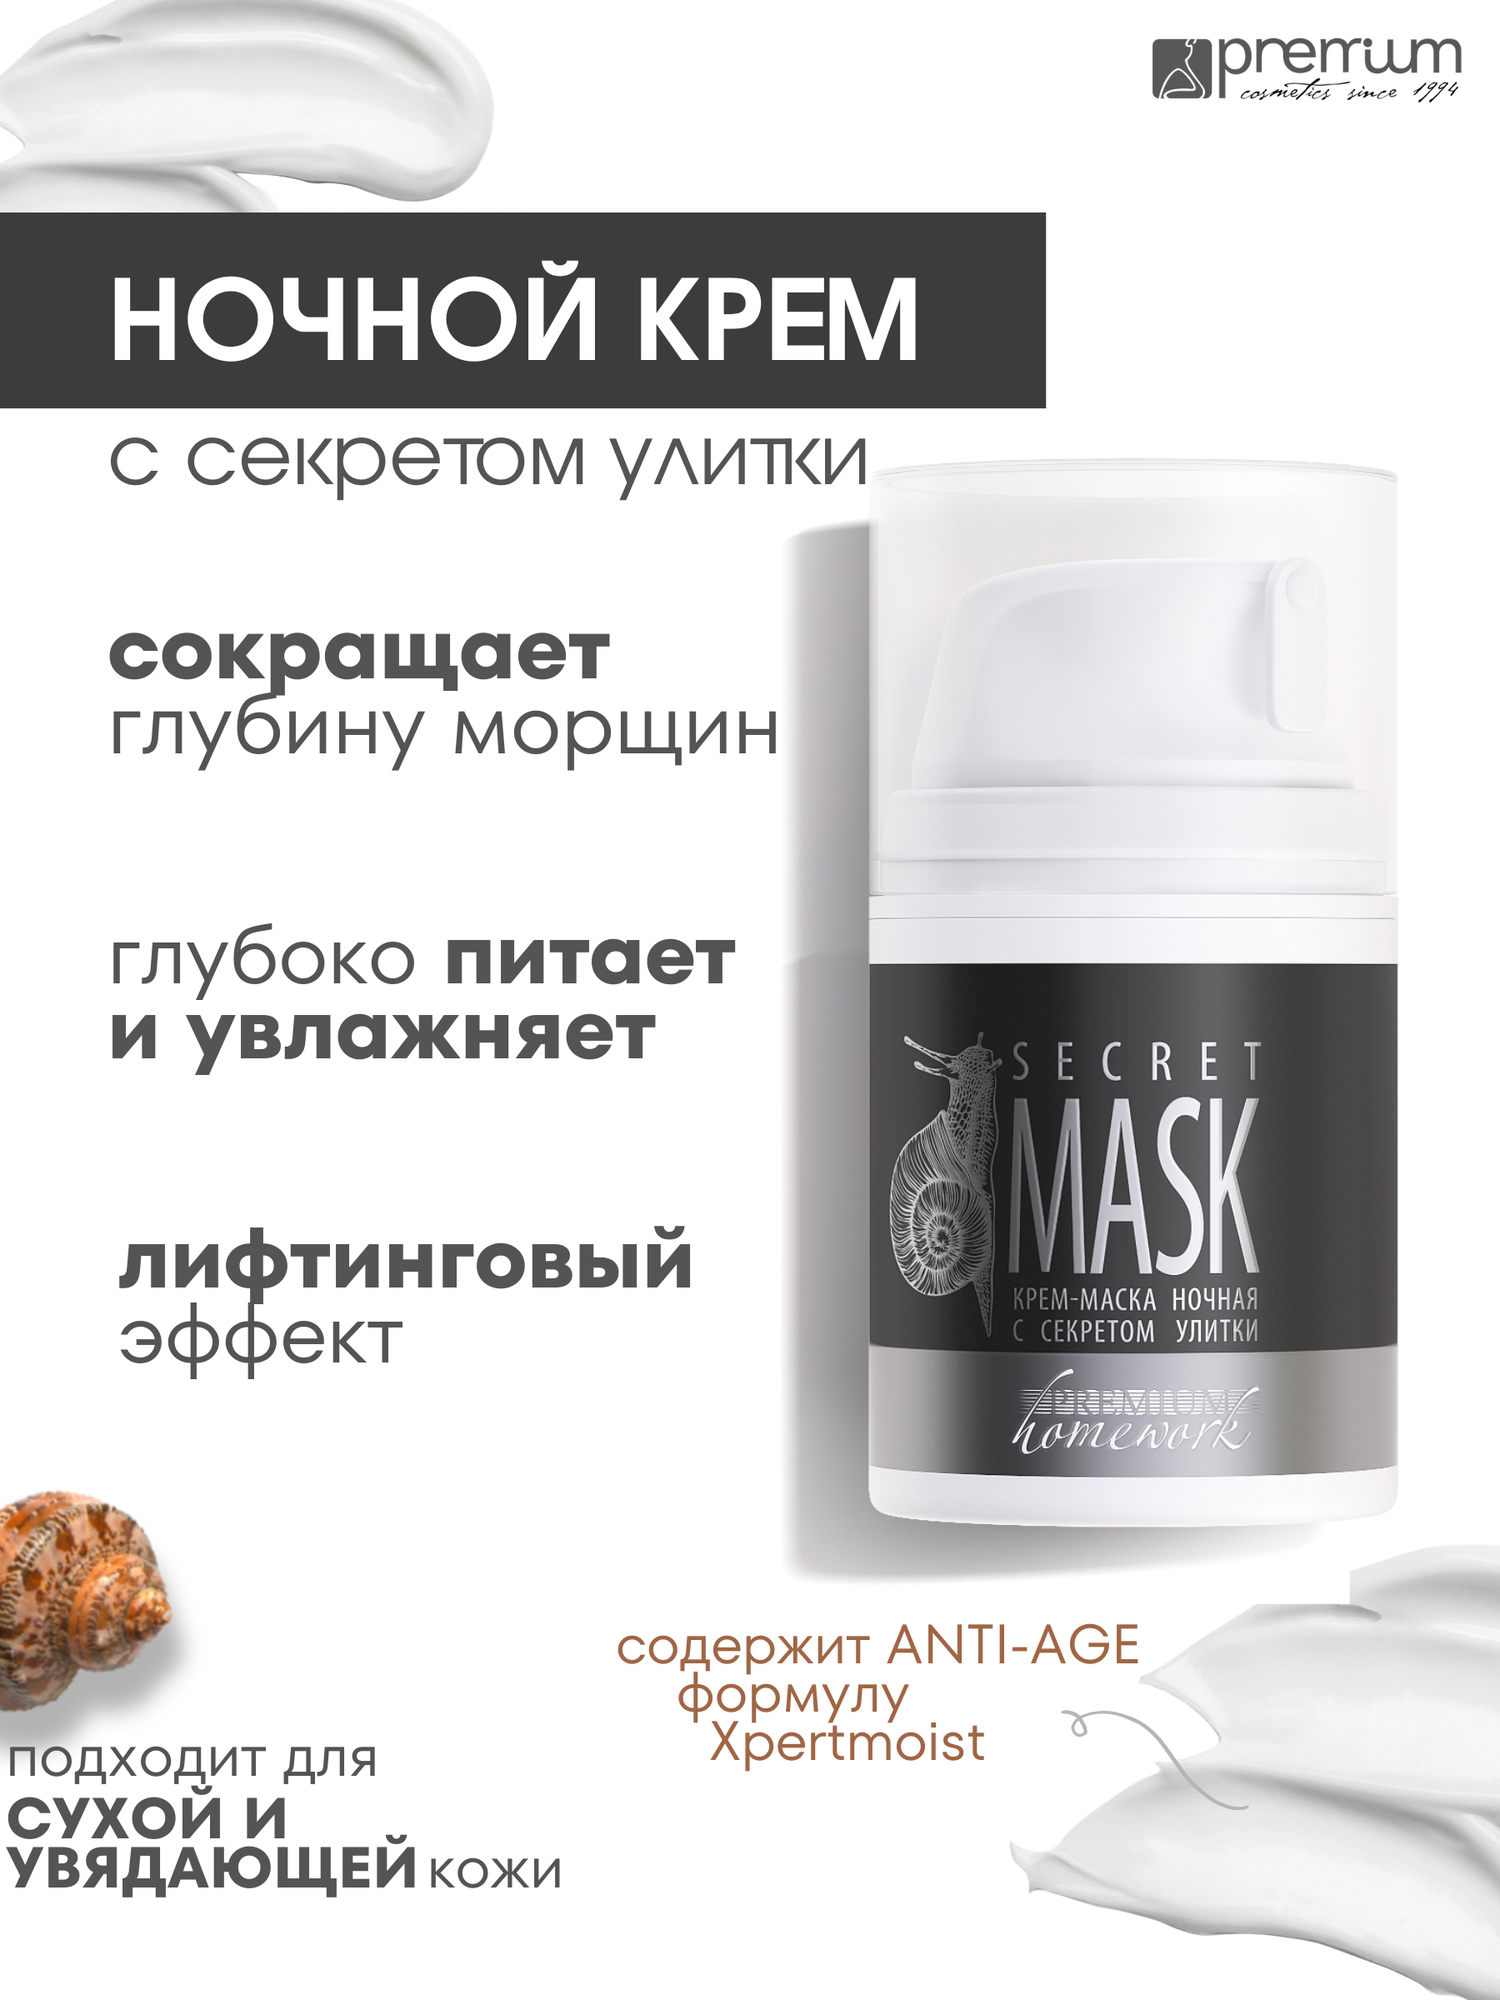 Premium Ночной крем Secret Mask c секретом улитки